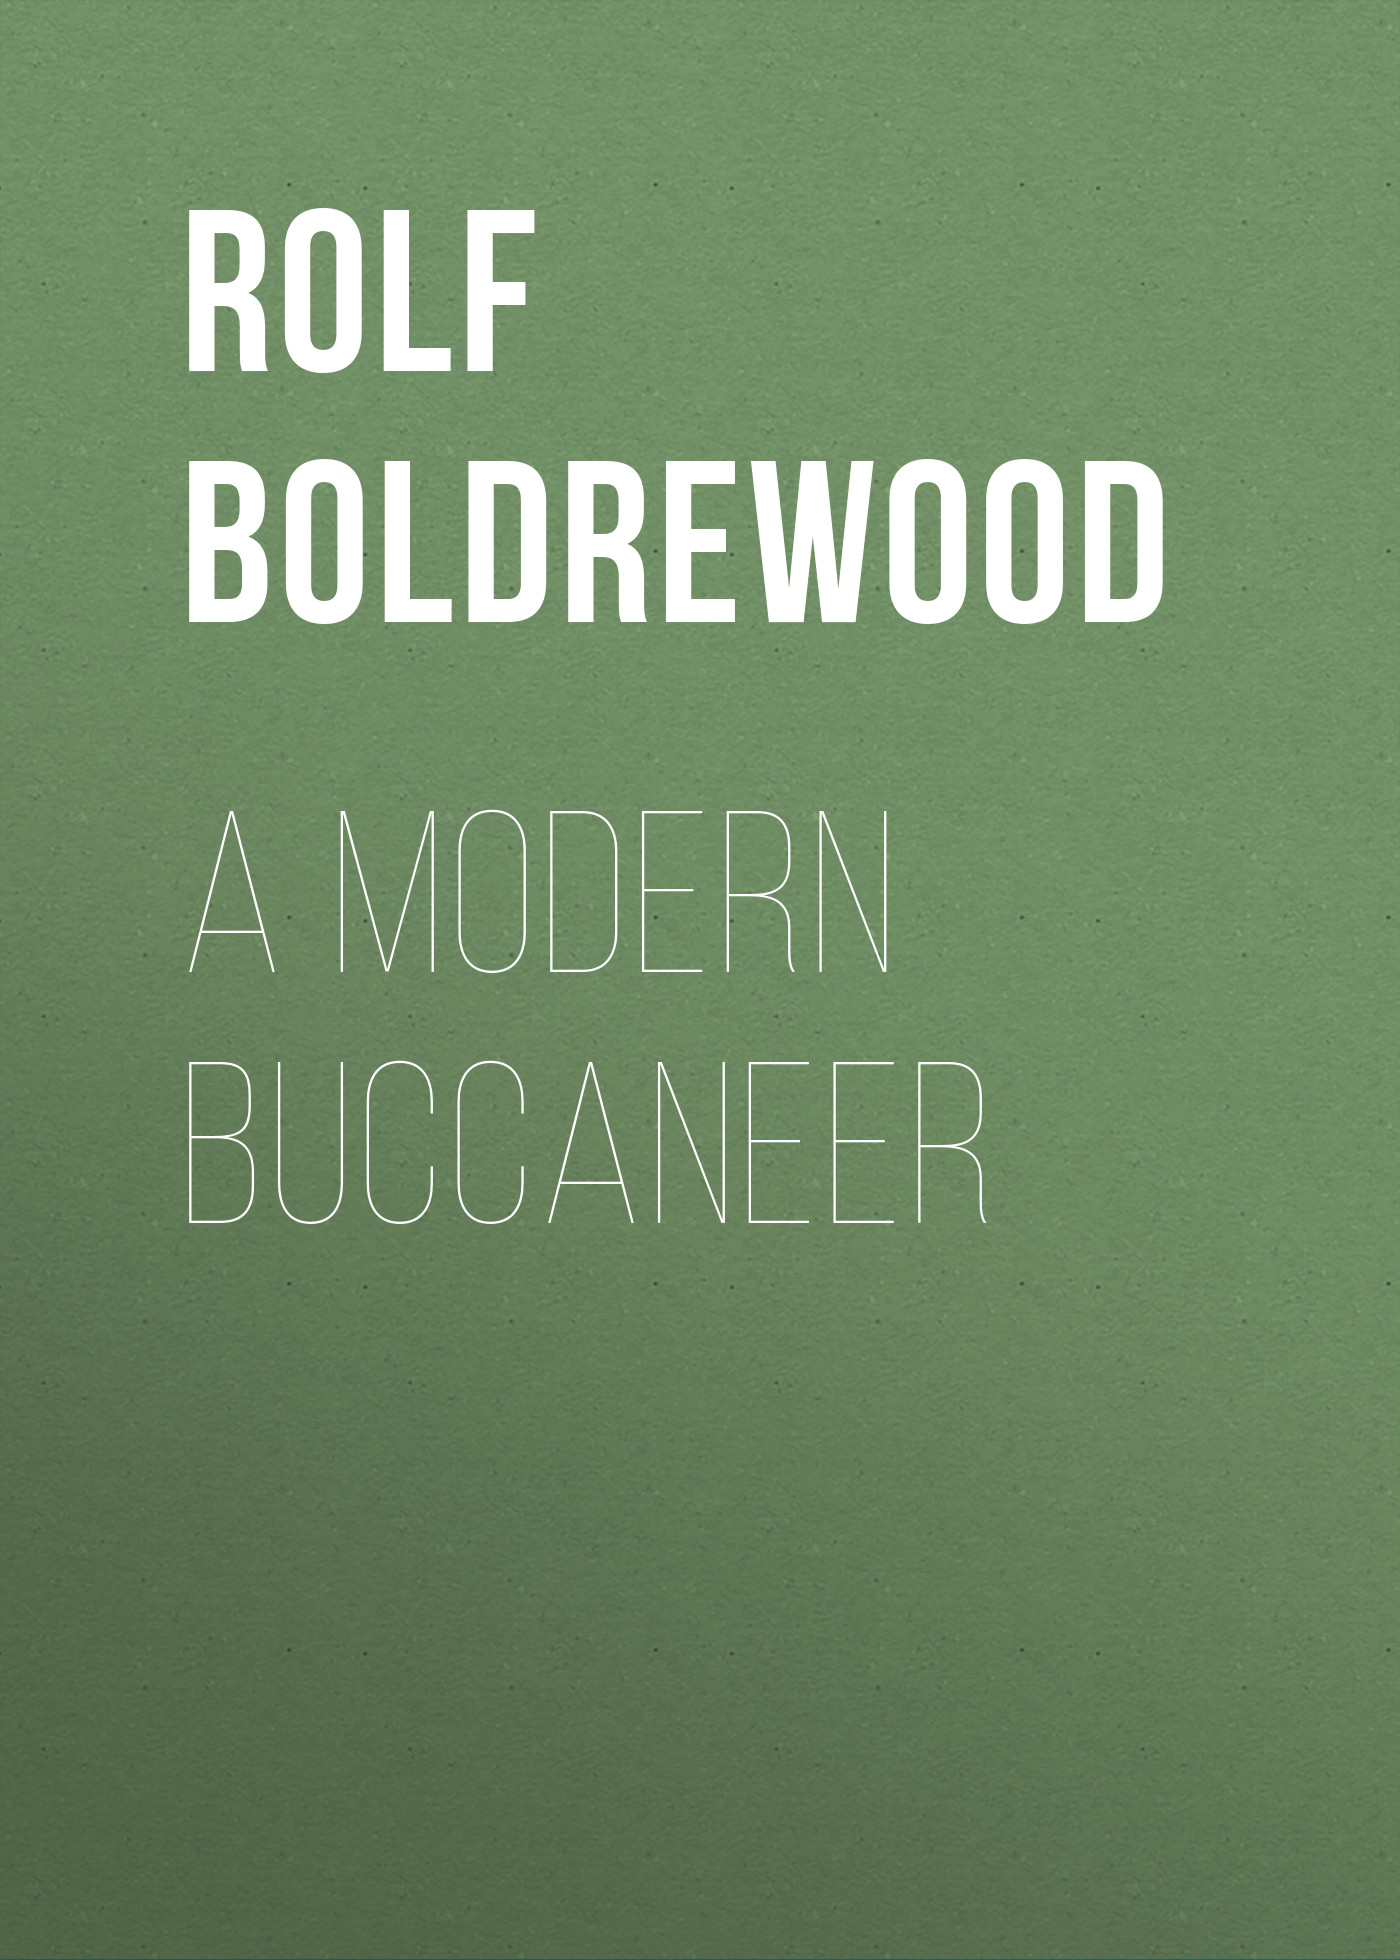 Книга A Modern Buccaneer из серии , созданная Rolf Boldrewood, может относится к жанру Зарубежная старинная литература, Зарубежная классика. Стоимость электронной книги A Modern Buccaneer с идентификатором 24172820 составляет 0.90 руб.